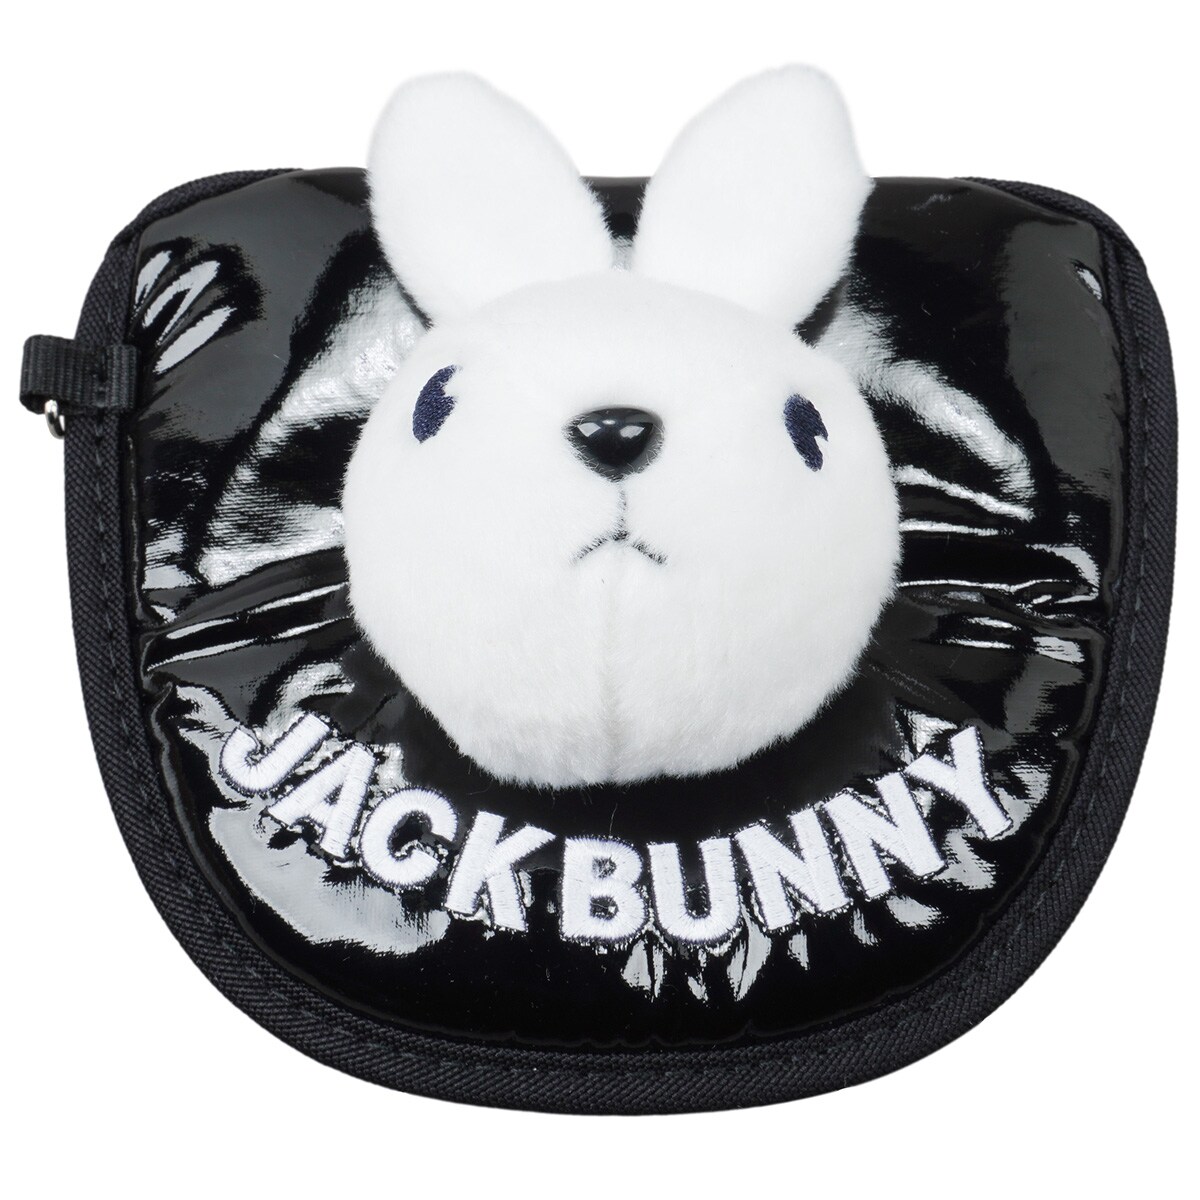 ジャックバニー(Jack Bunny!!) ヘッドカバー 通販｜GDOゴルフショップ